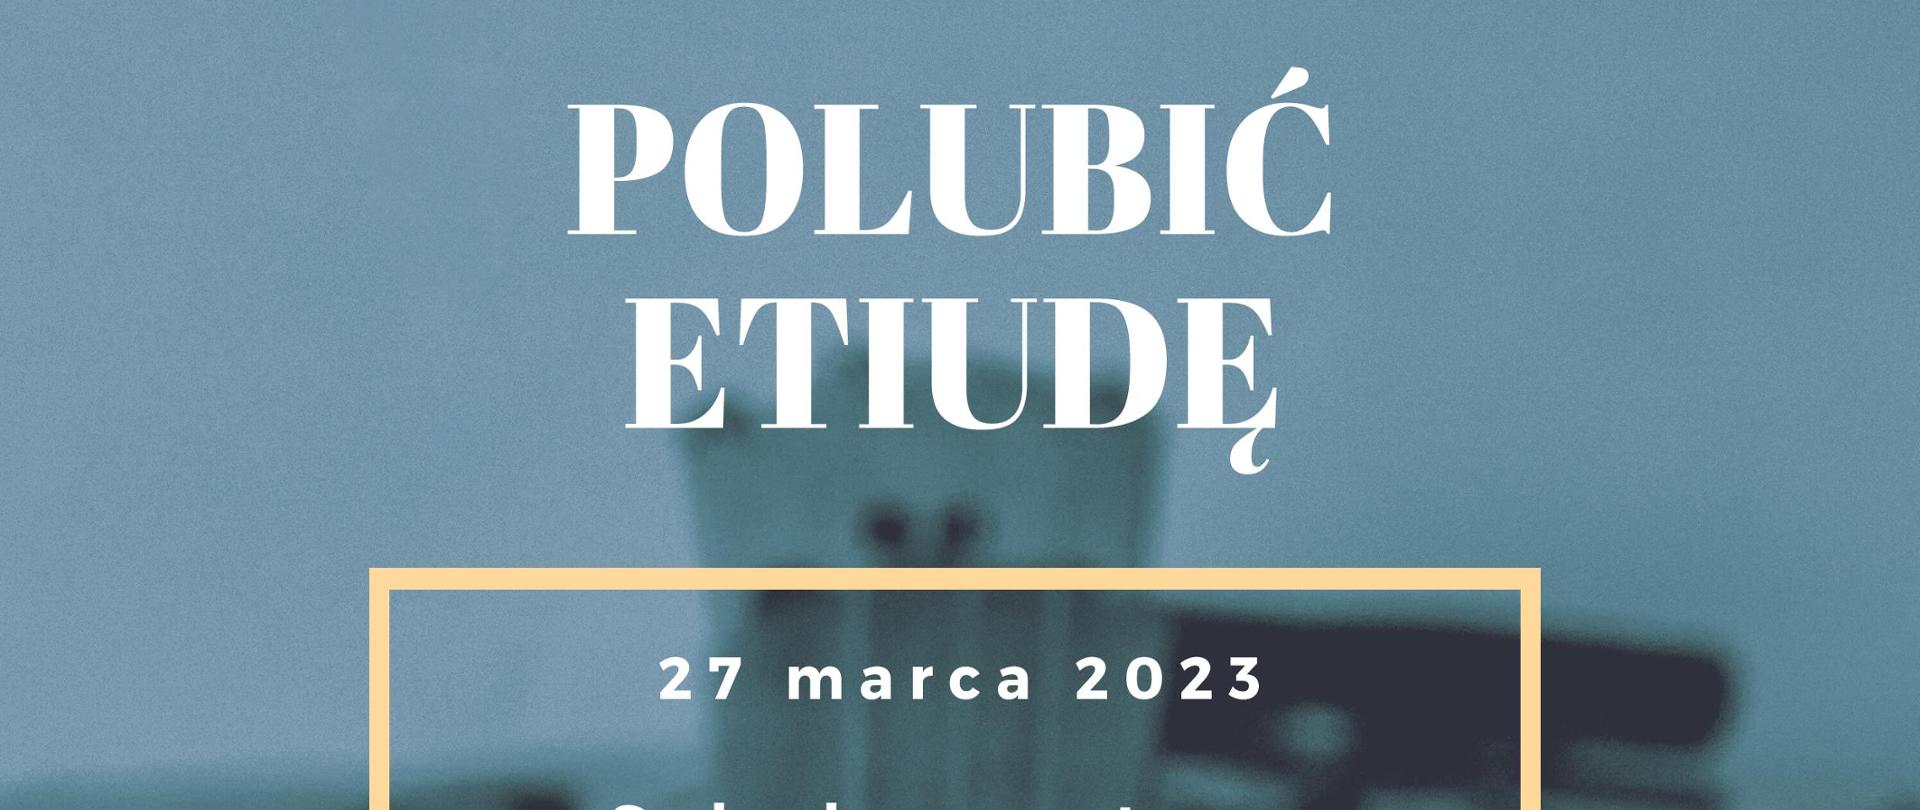 Informacja o konkursie sekcji instrumentów strunowych Polubić etiudę w dniu 27 marca 2023.